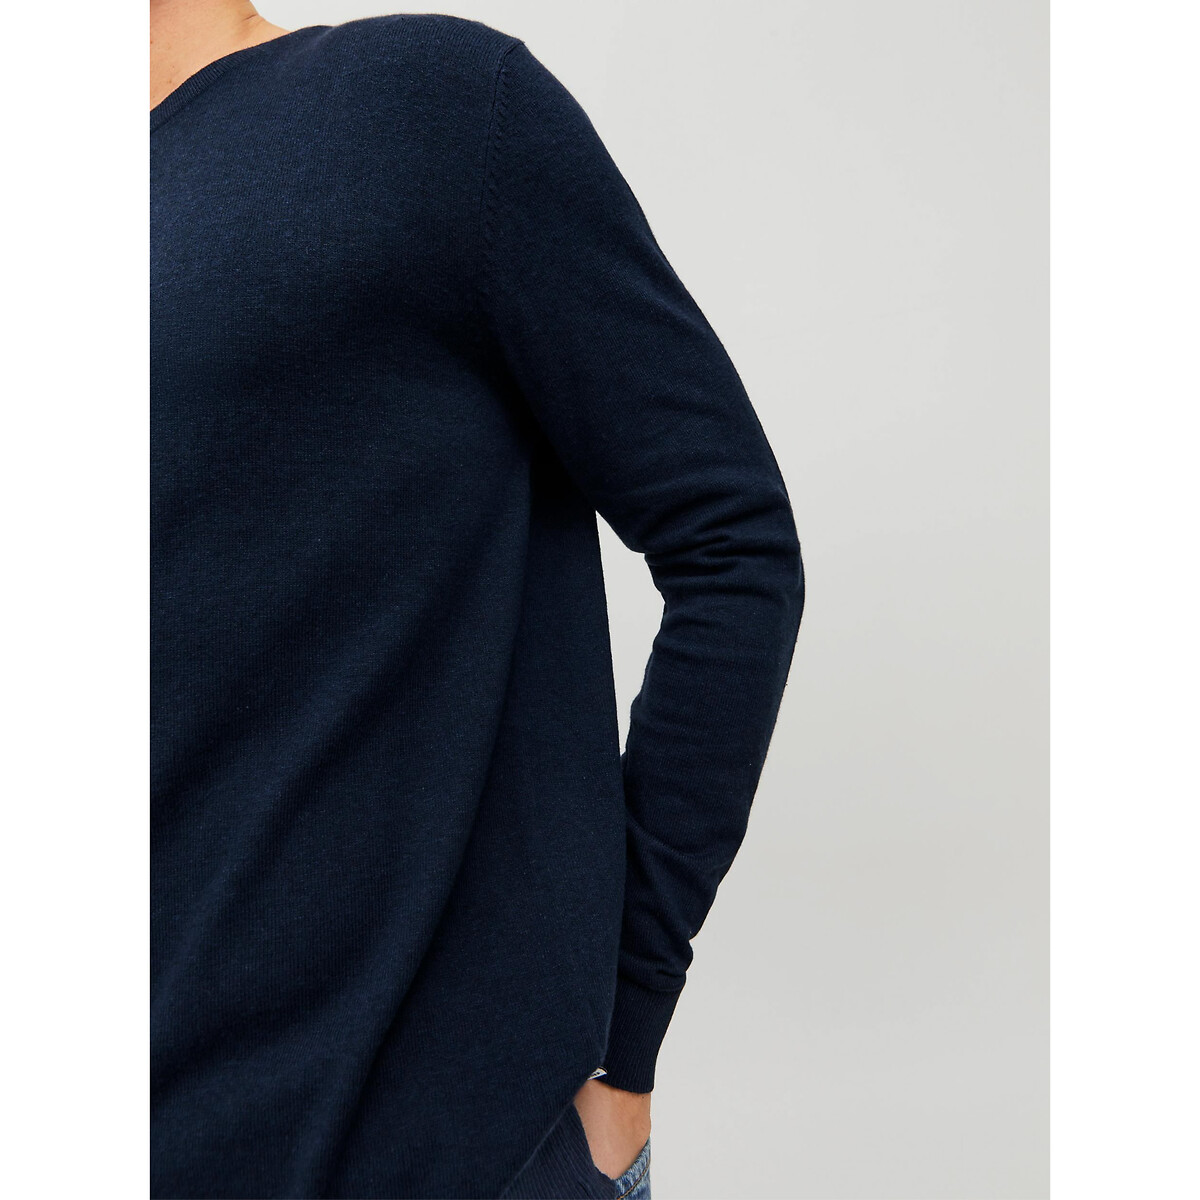 Пуловер С круглым вырезом L синий LaRedoute, размер L - фото 4